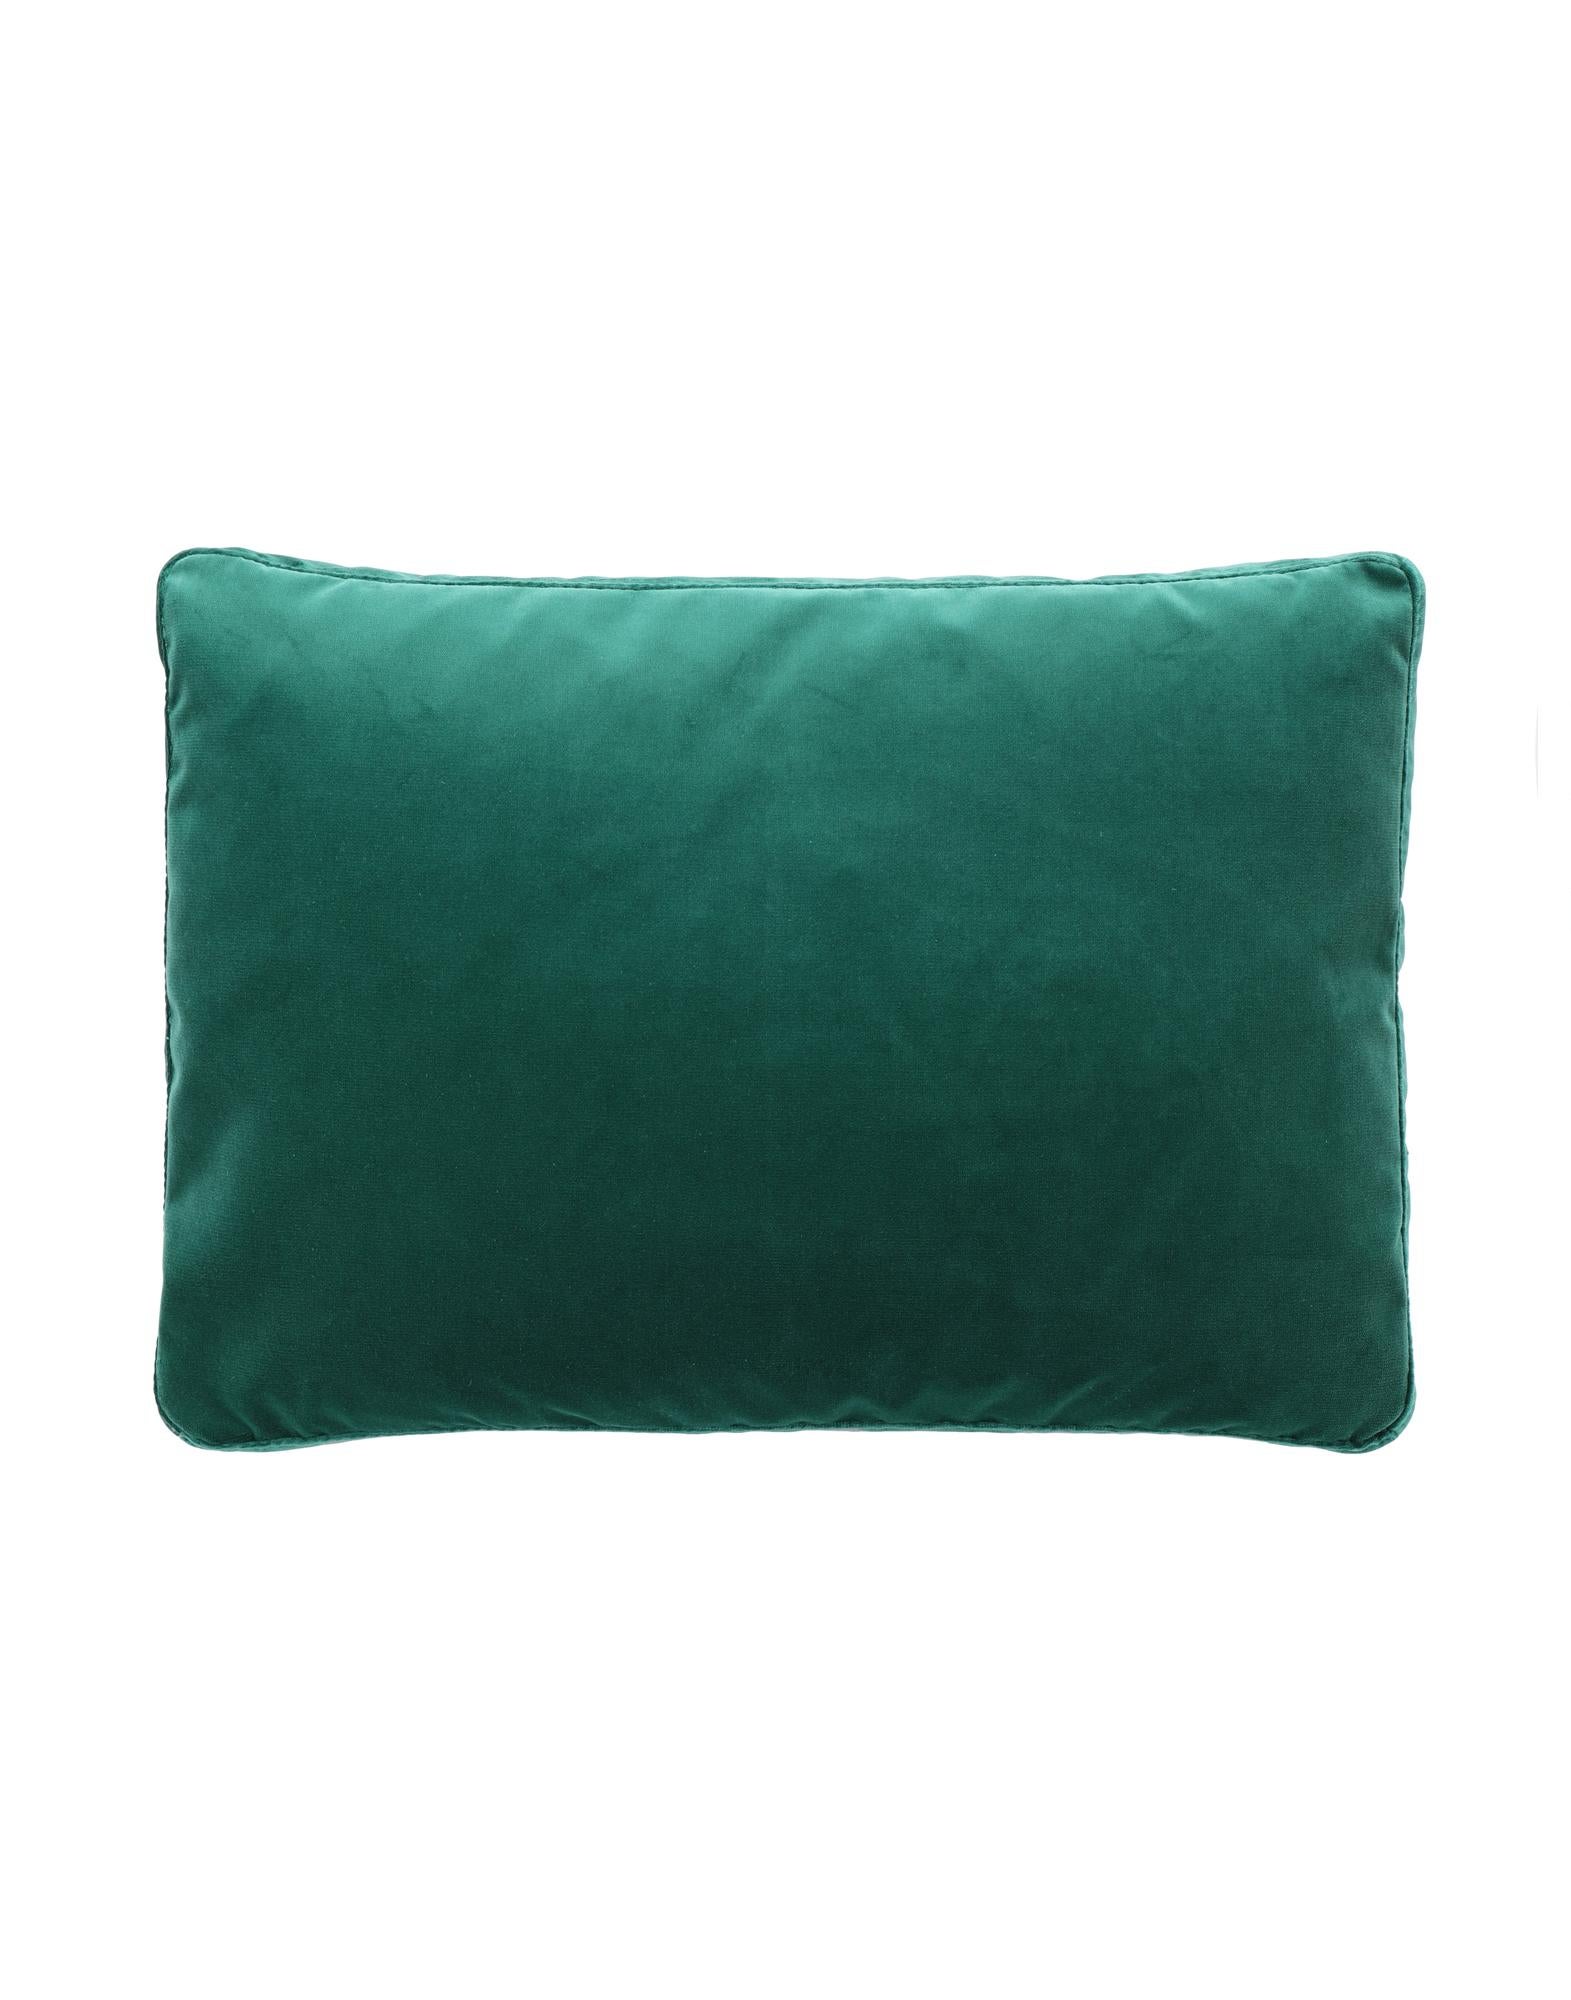 Kartell Cushions Largo in Velvet by Piero Lissoni For Sale 4